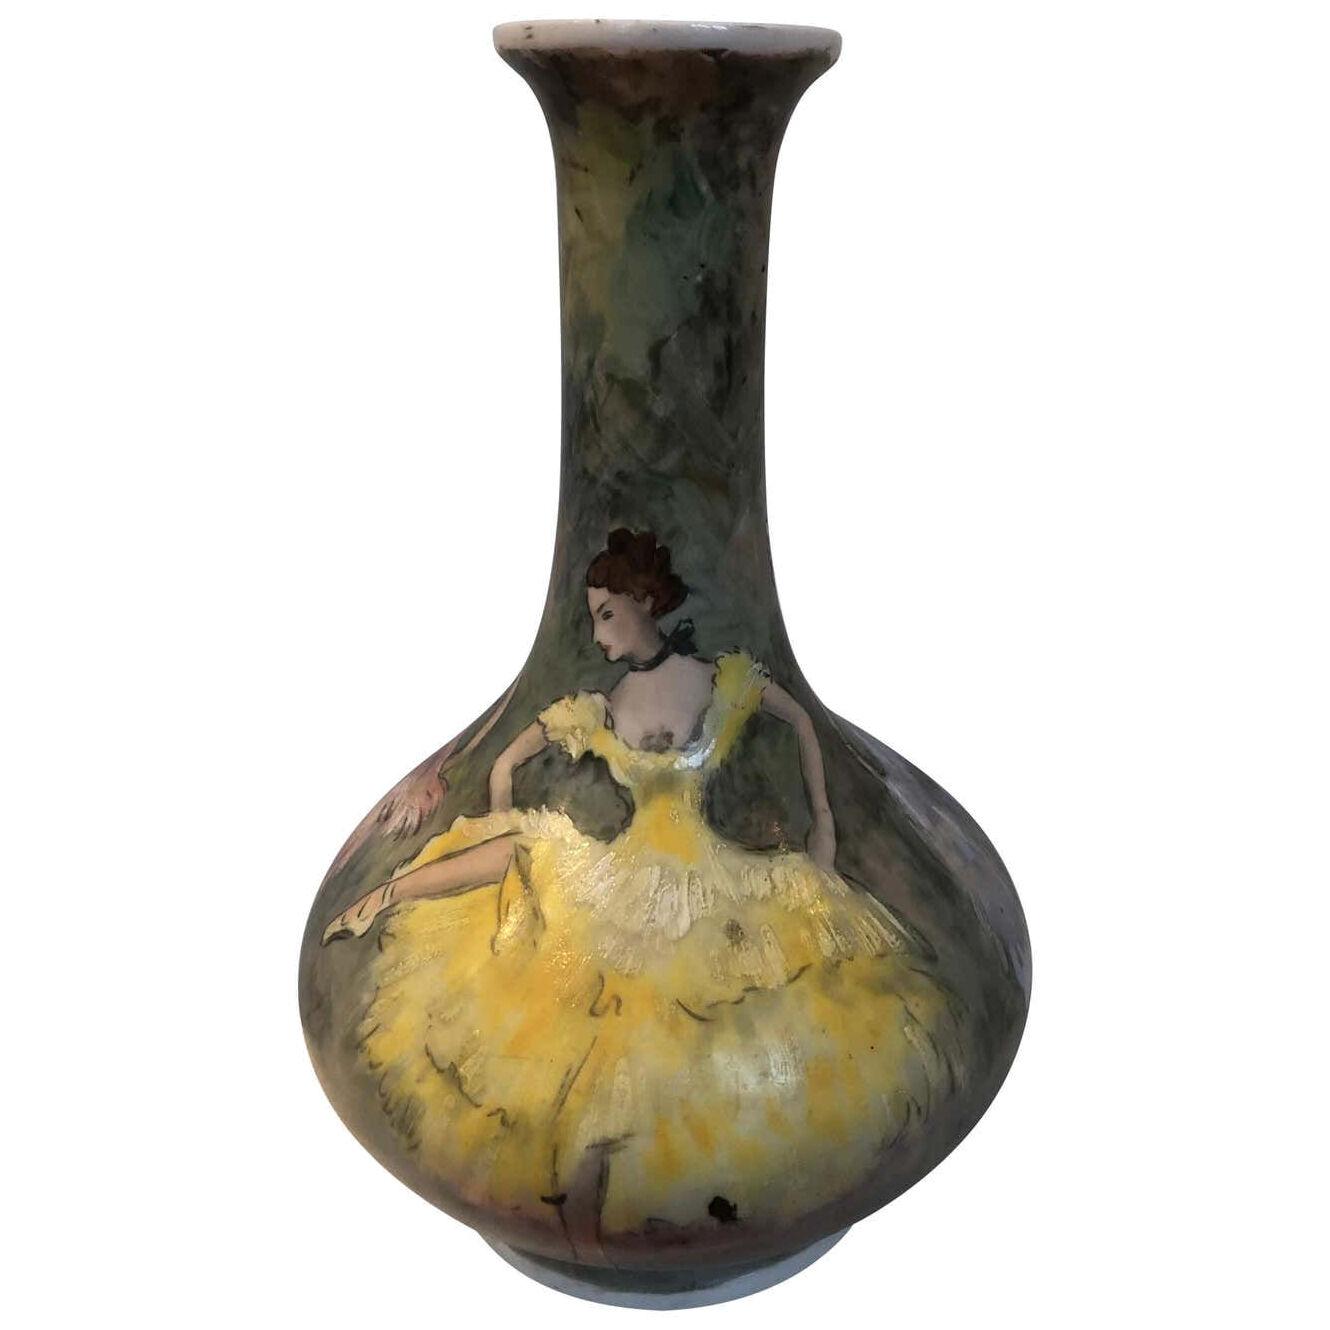 Beautiful Vase Lamp Porcelain De Paris Hand Painted French Cancan